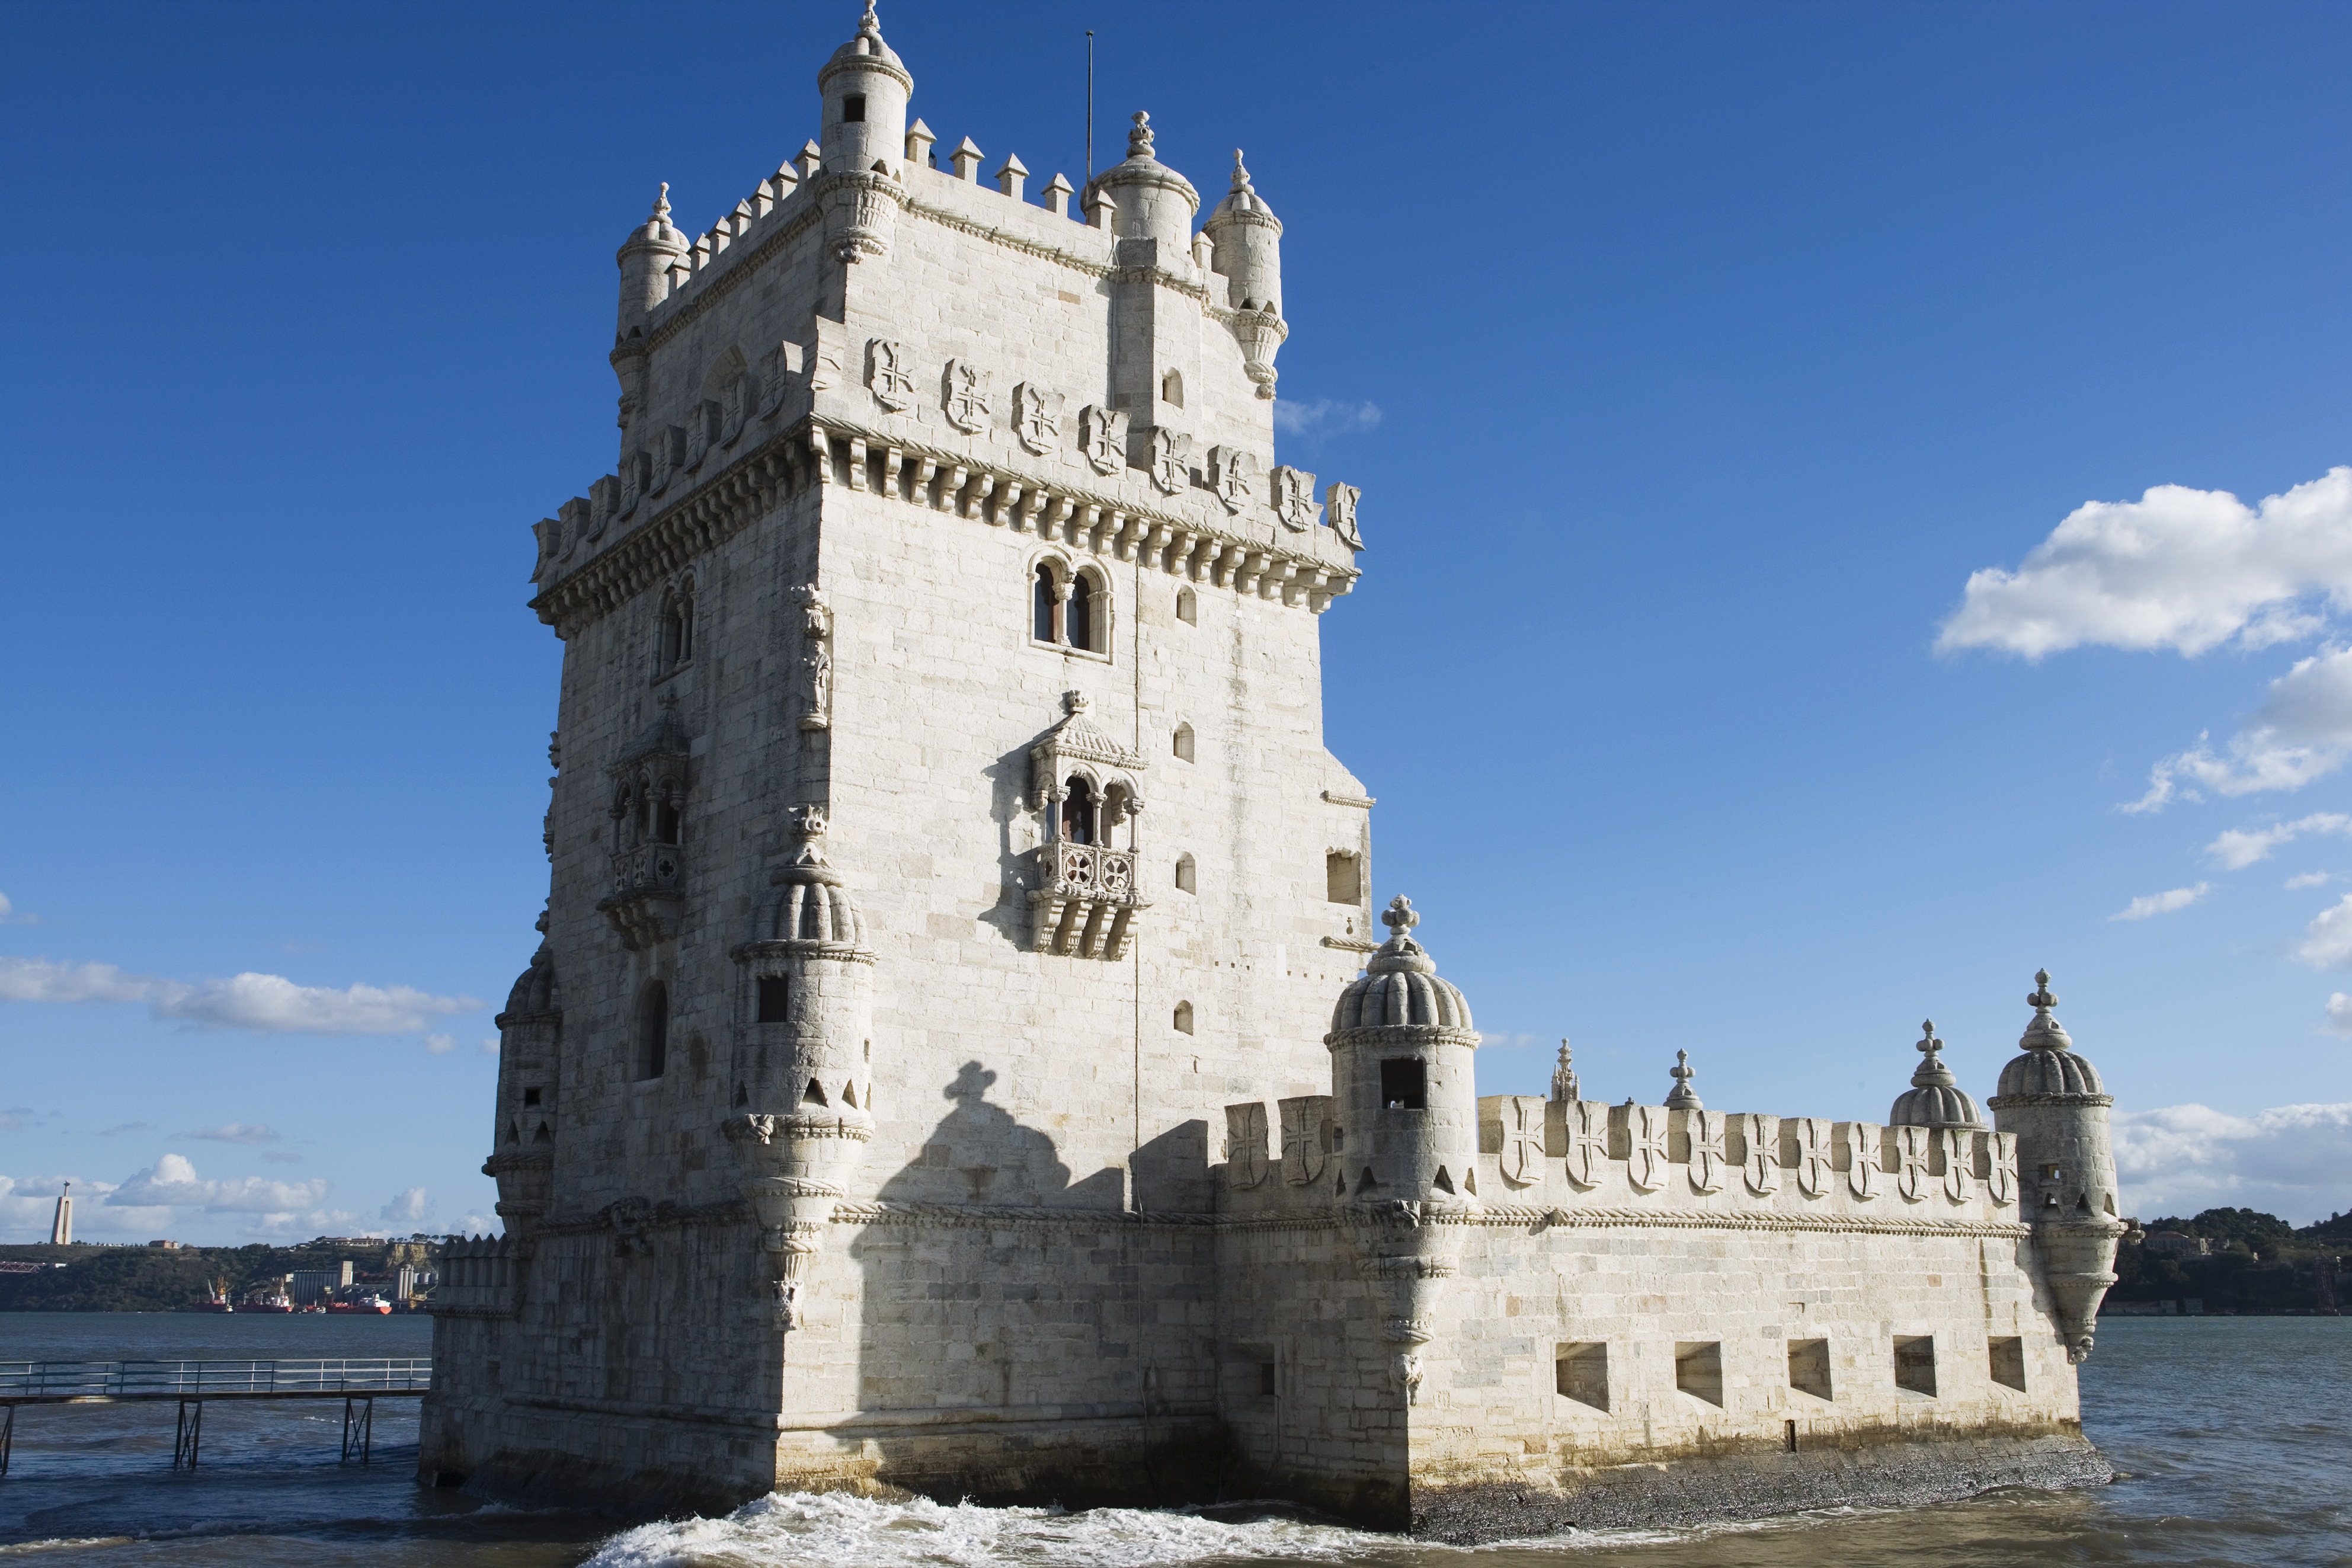 Torre de Belém Lisbon, Portugal Attractions Lonely